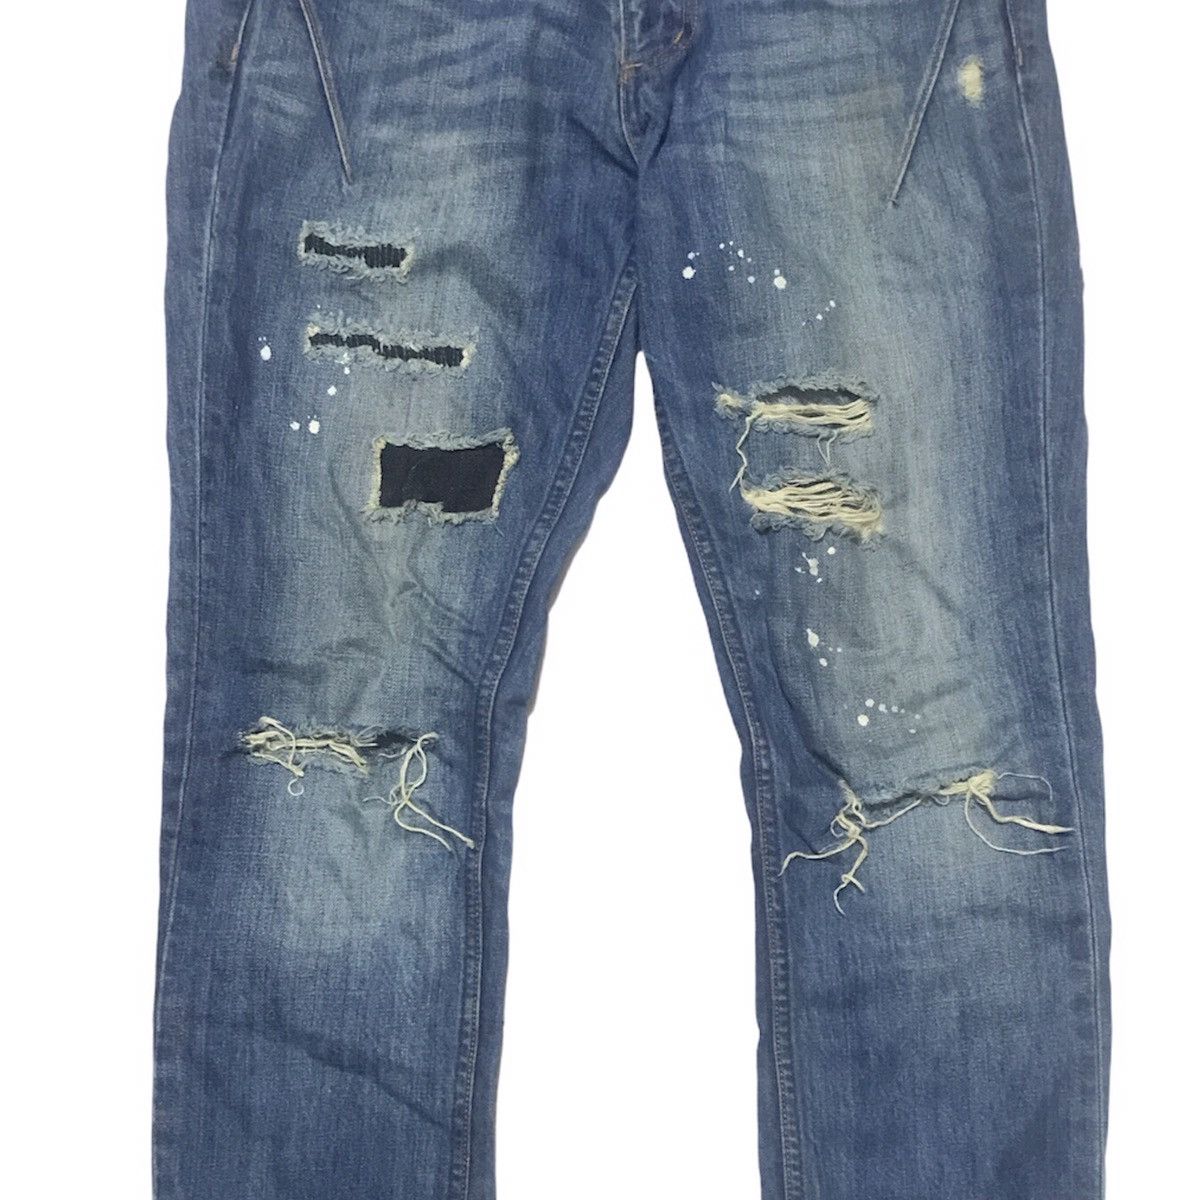 N(N) Number Nine Denim Distressed jeans - 3